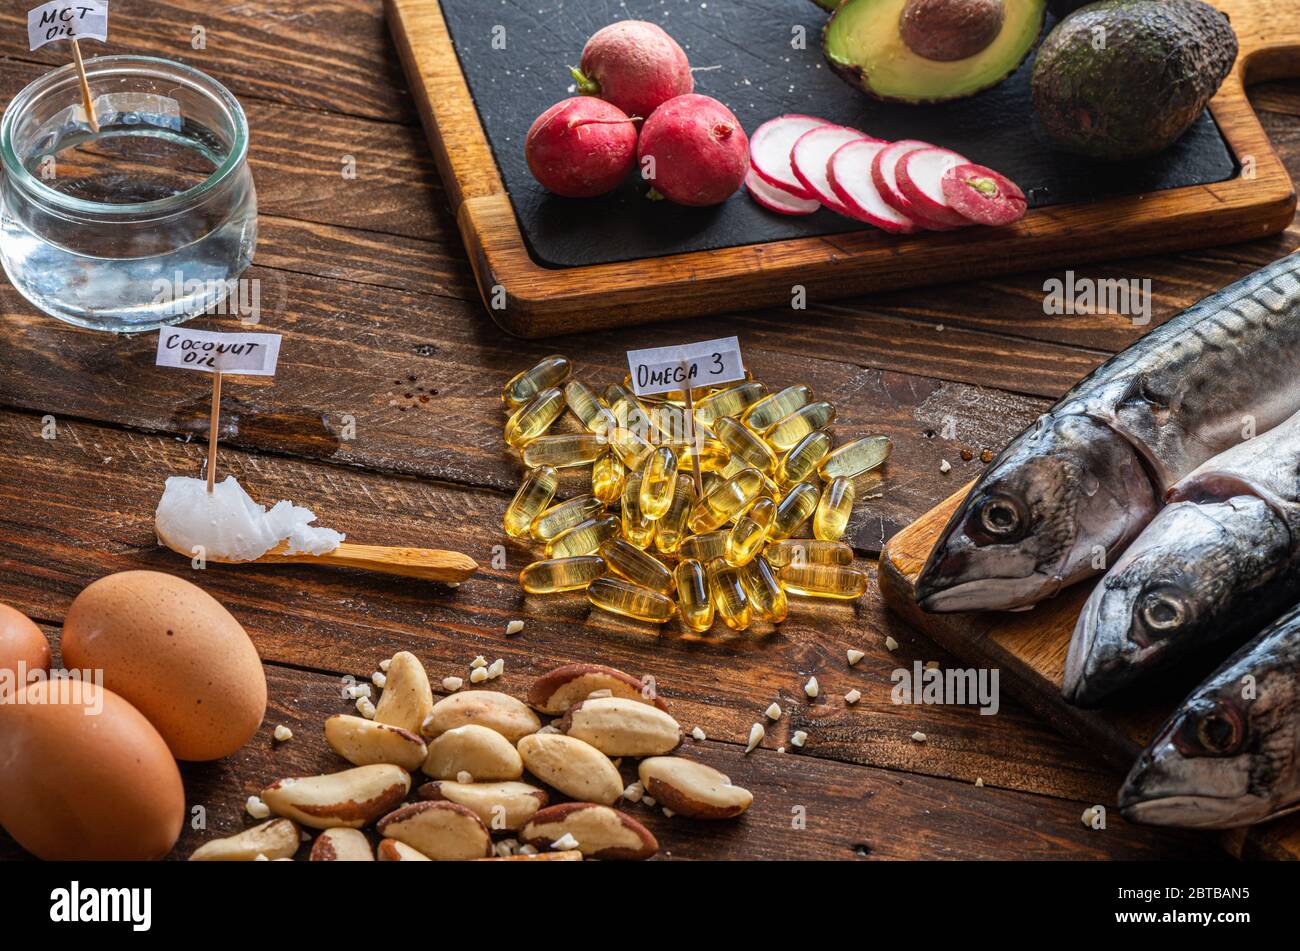 Primo piano di alimenti chetogenici: Olio MCT, pesce sgombro, avocado, uova, burro di cocco, noci brasiliane, ravanelli, supplementi Omega-3 su un tavolo di legno Foto Stock